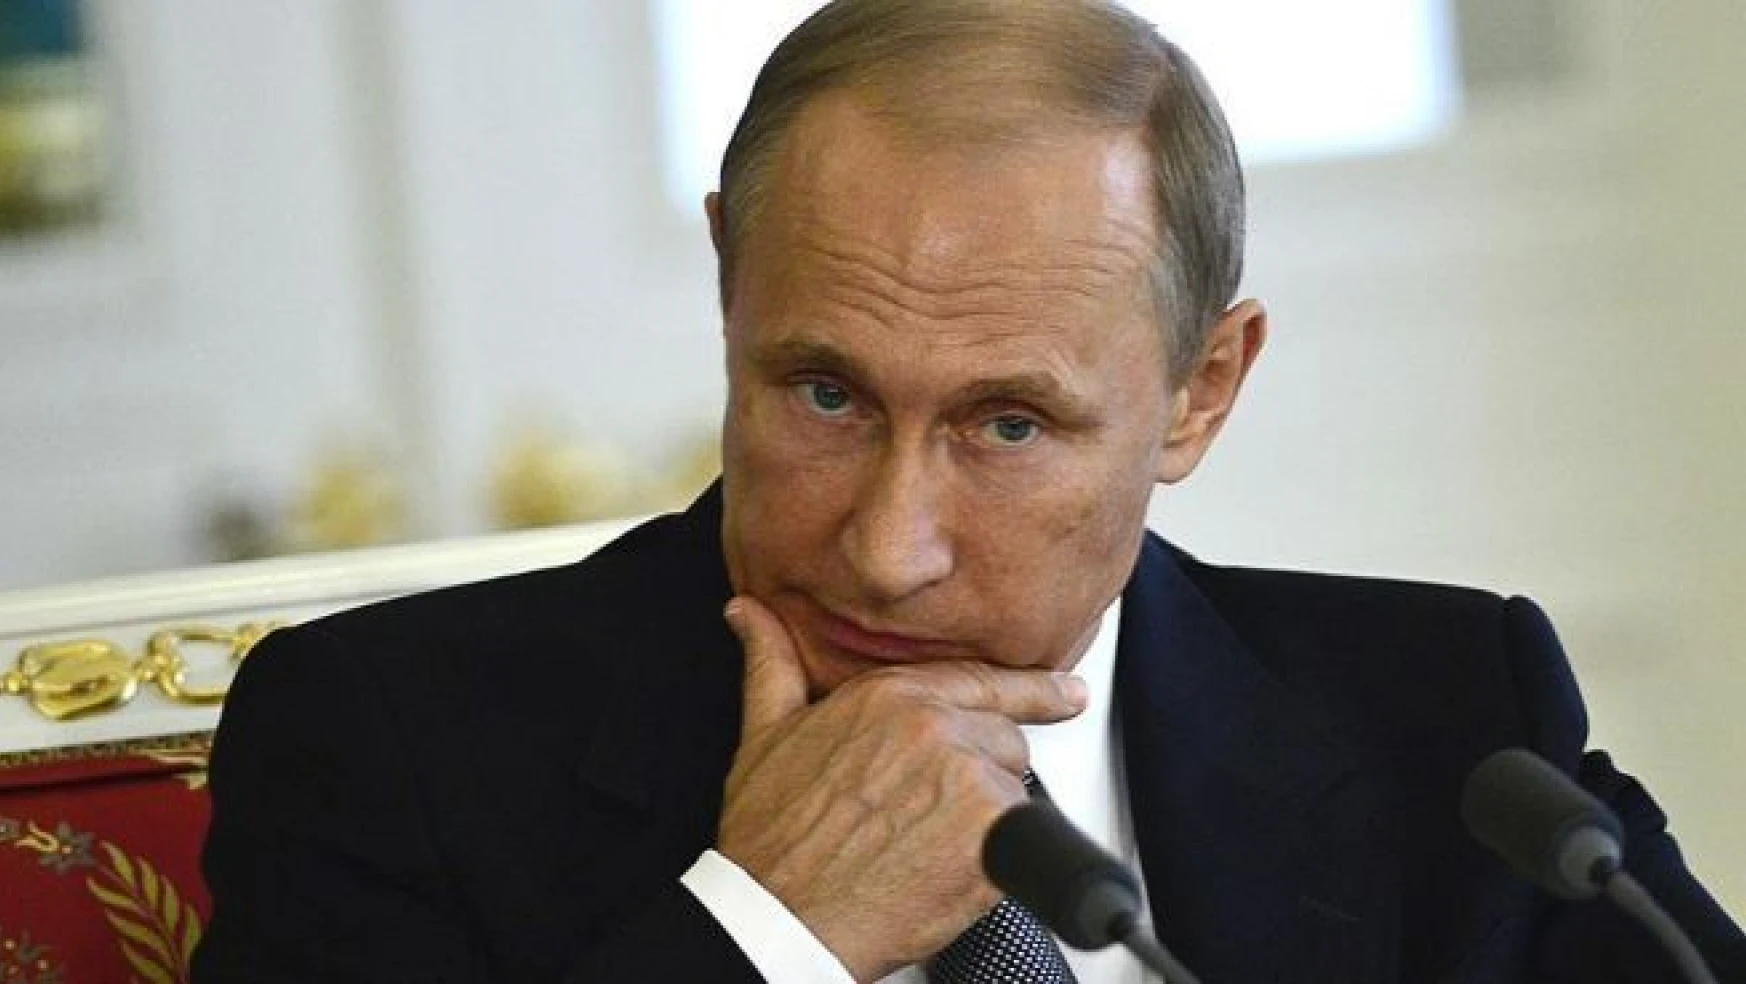 Putin'in zenginliğinin kaynağının 'yolsuzluk' olduğu iddiası